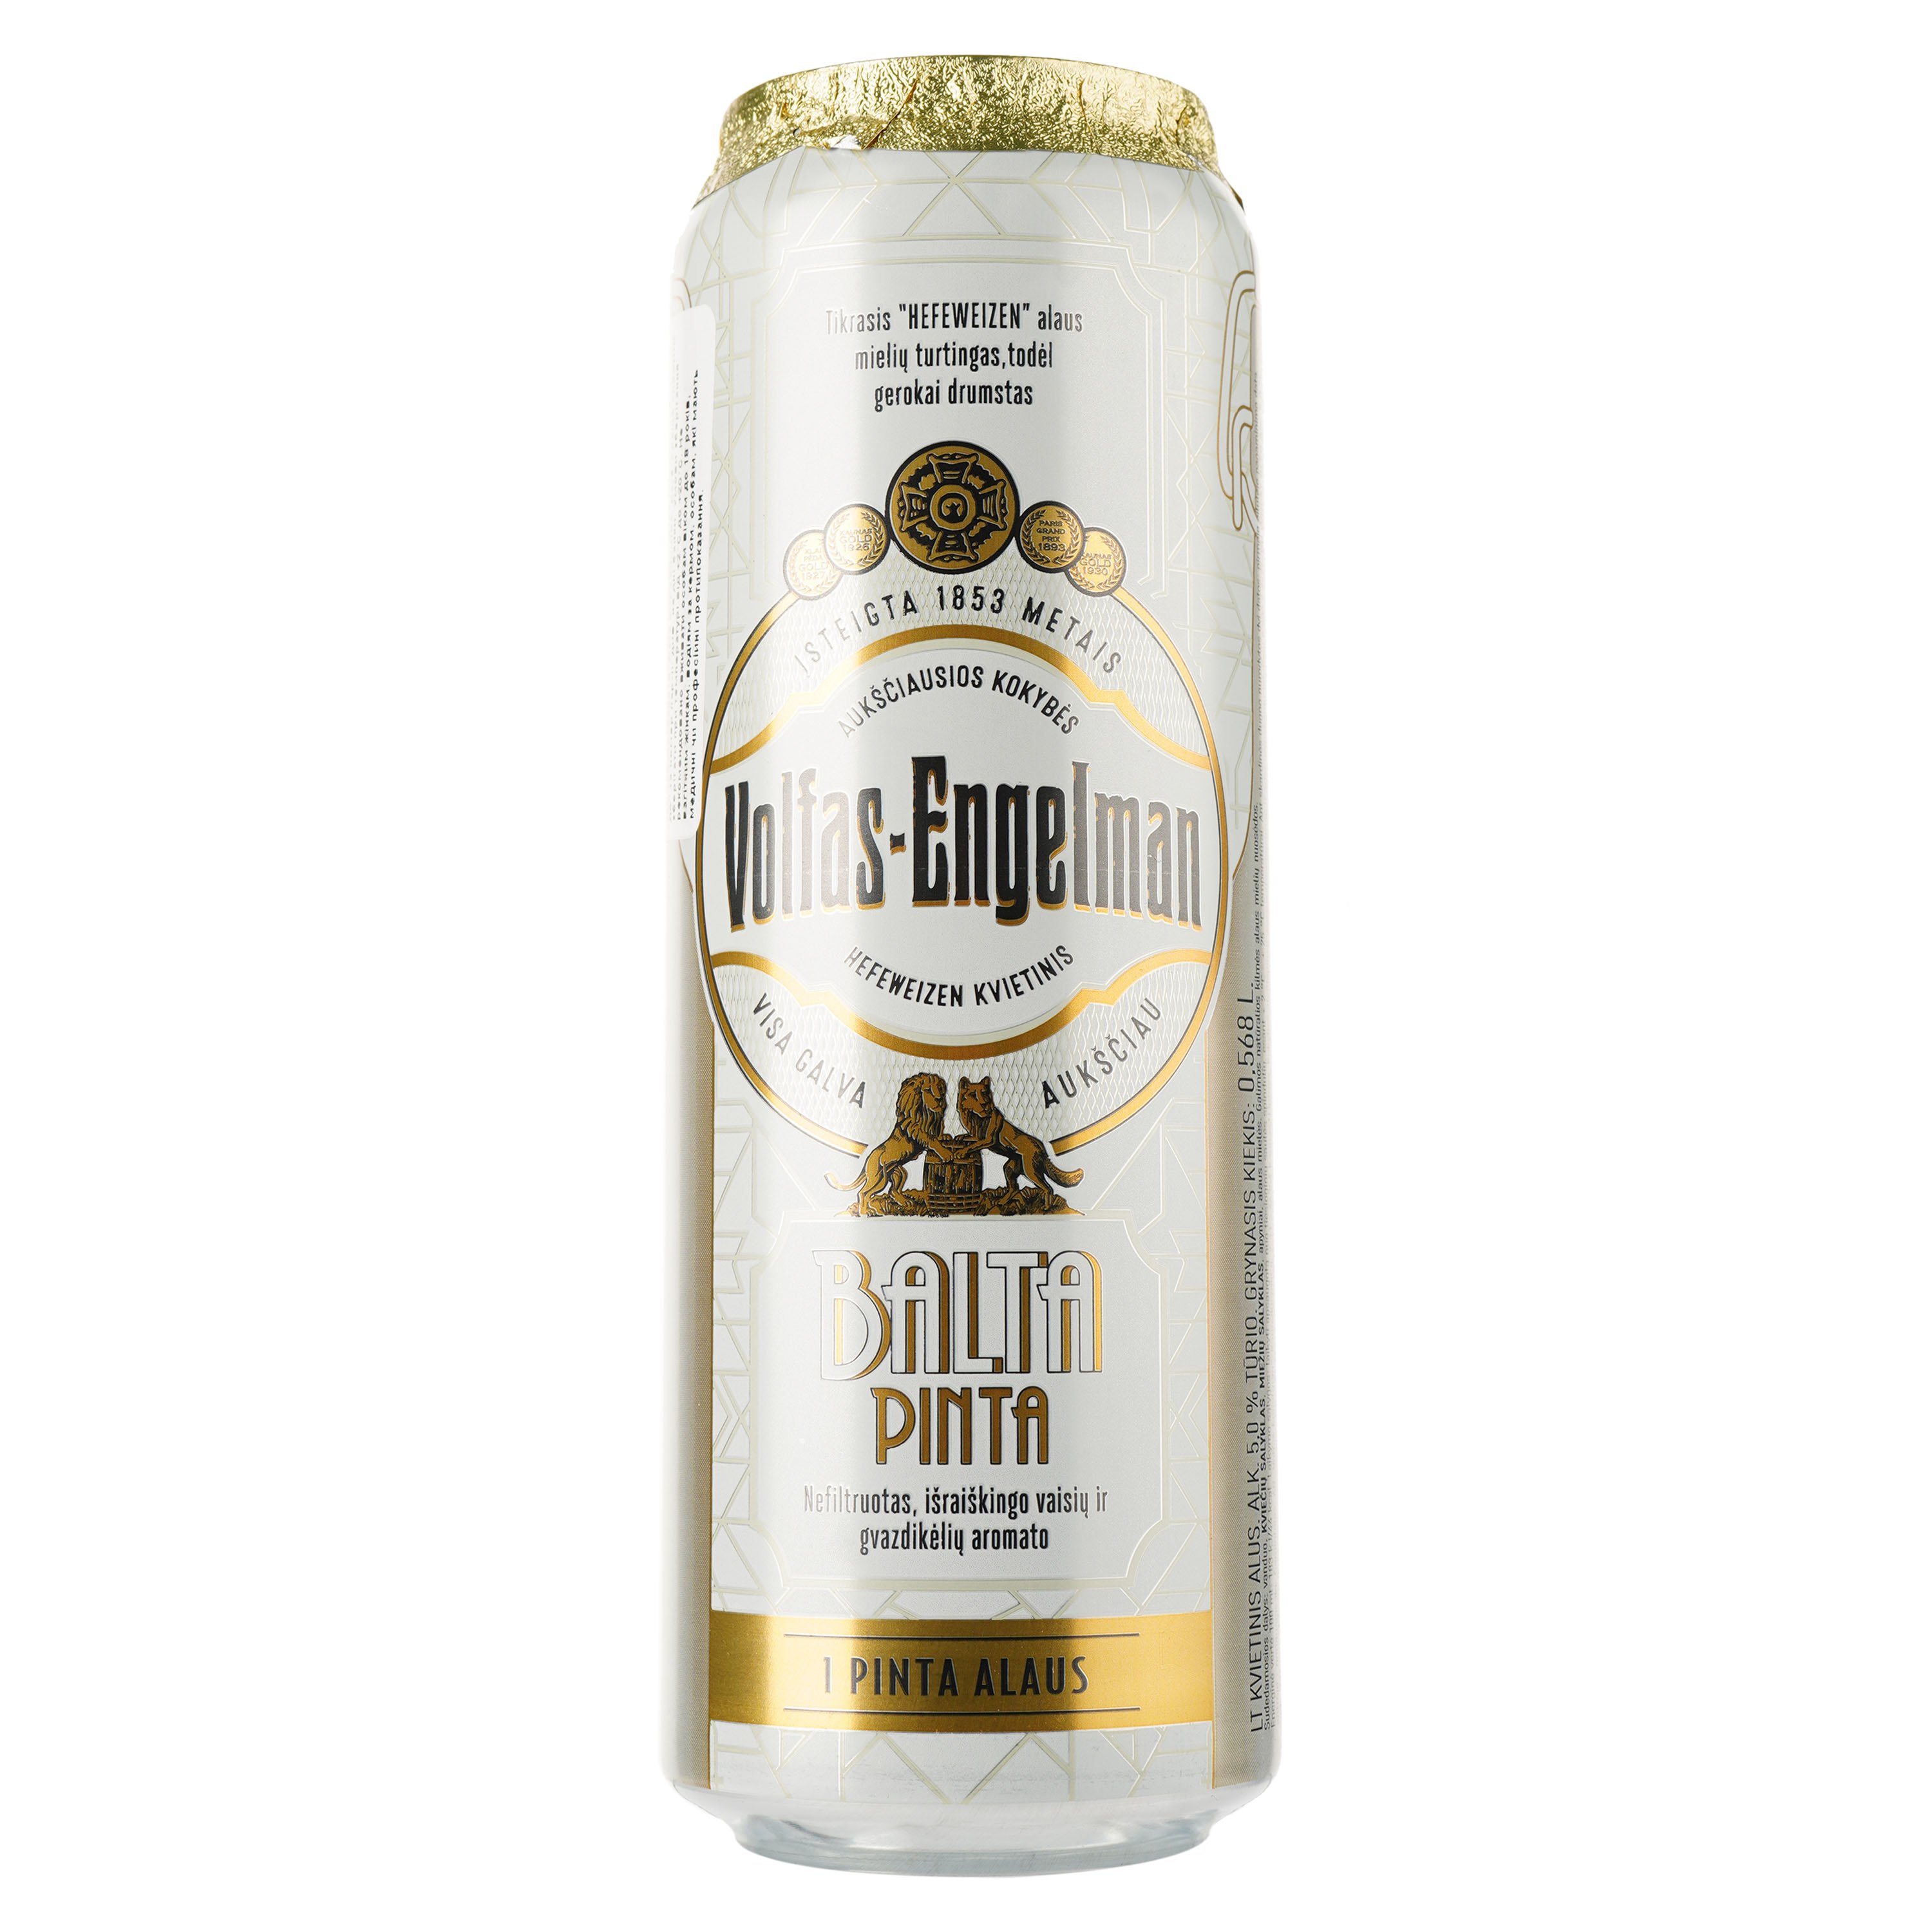 Пиво Volfas Engelman Balta Pinta, пшеничное, светлое, нефильтрованное, ж/б, 5%, 0,568 л - фото 1